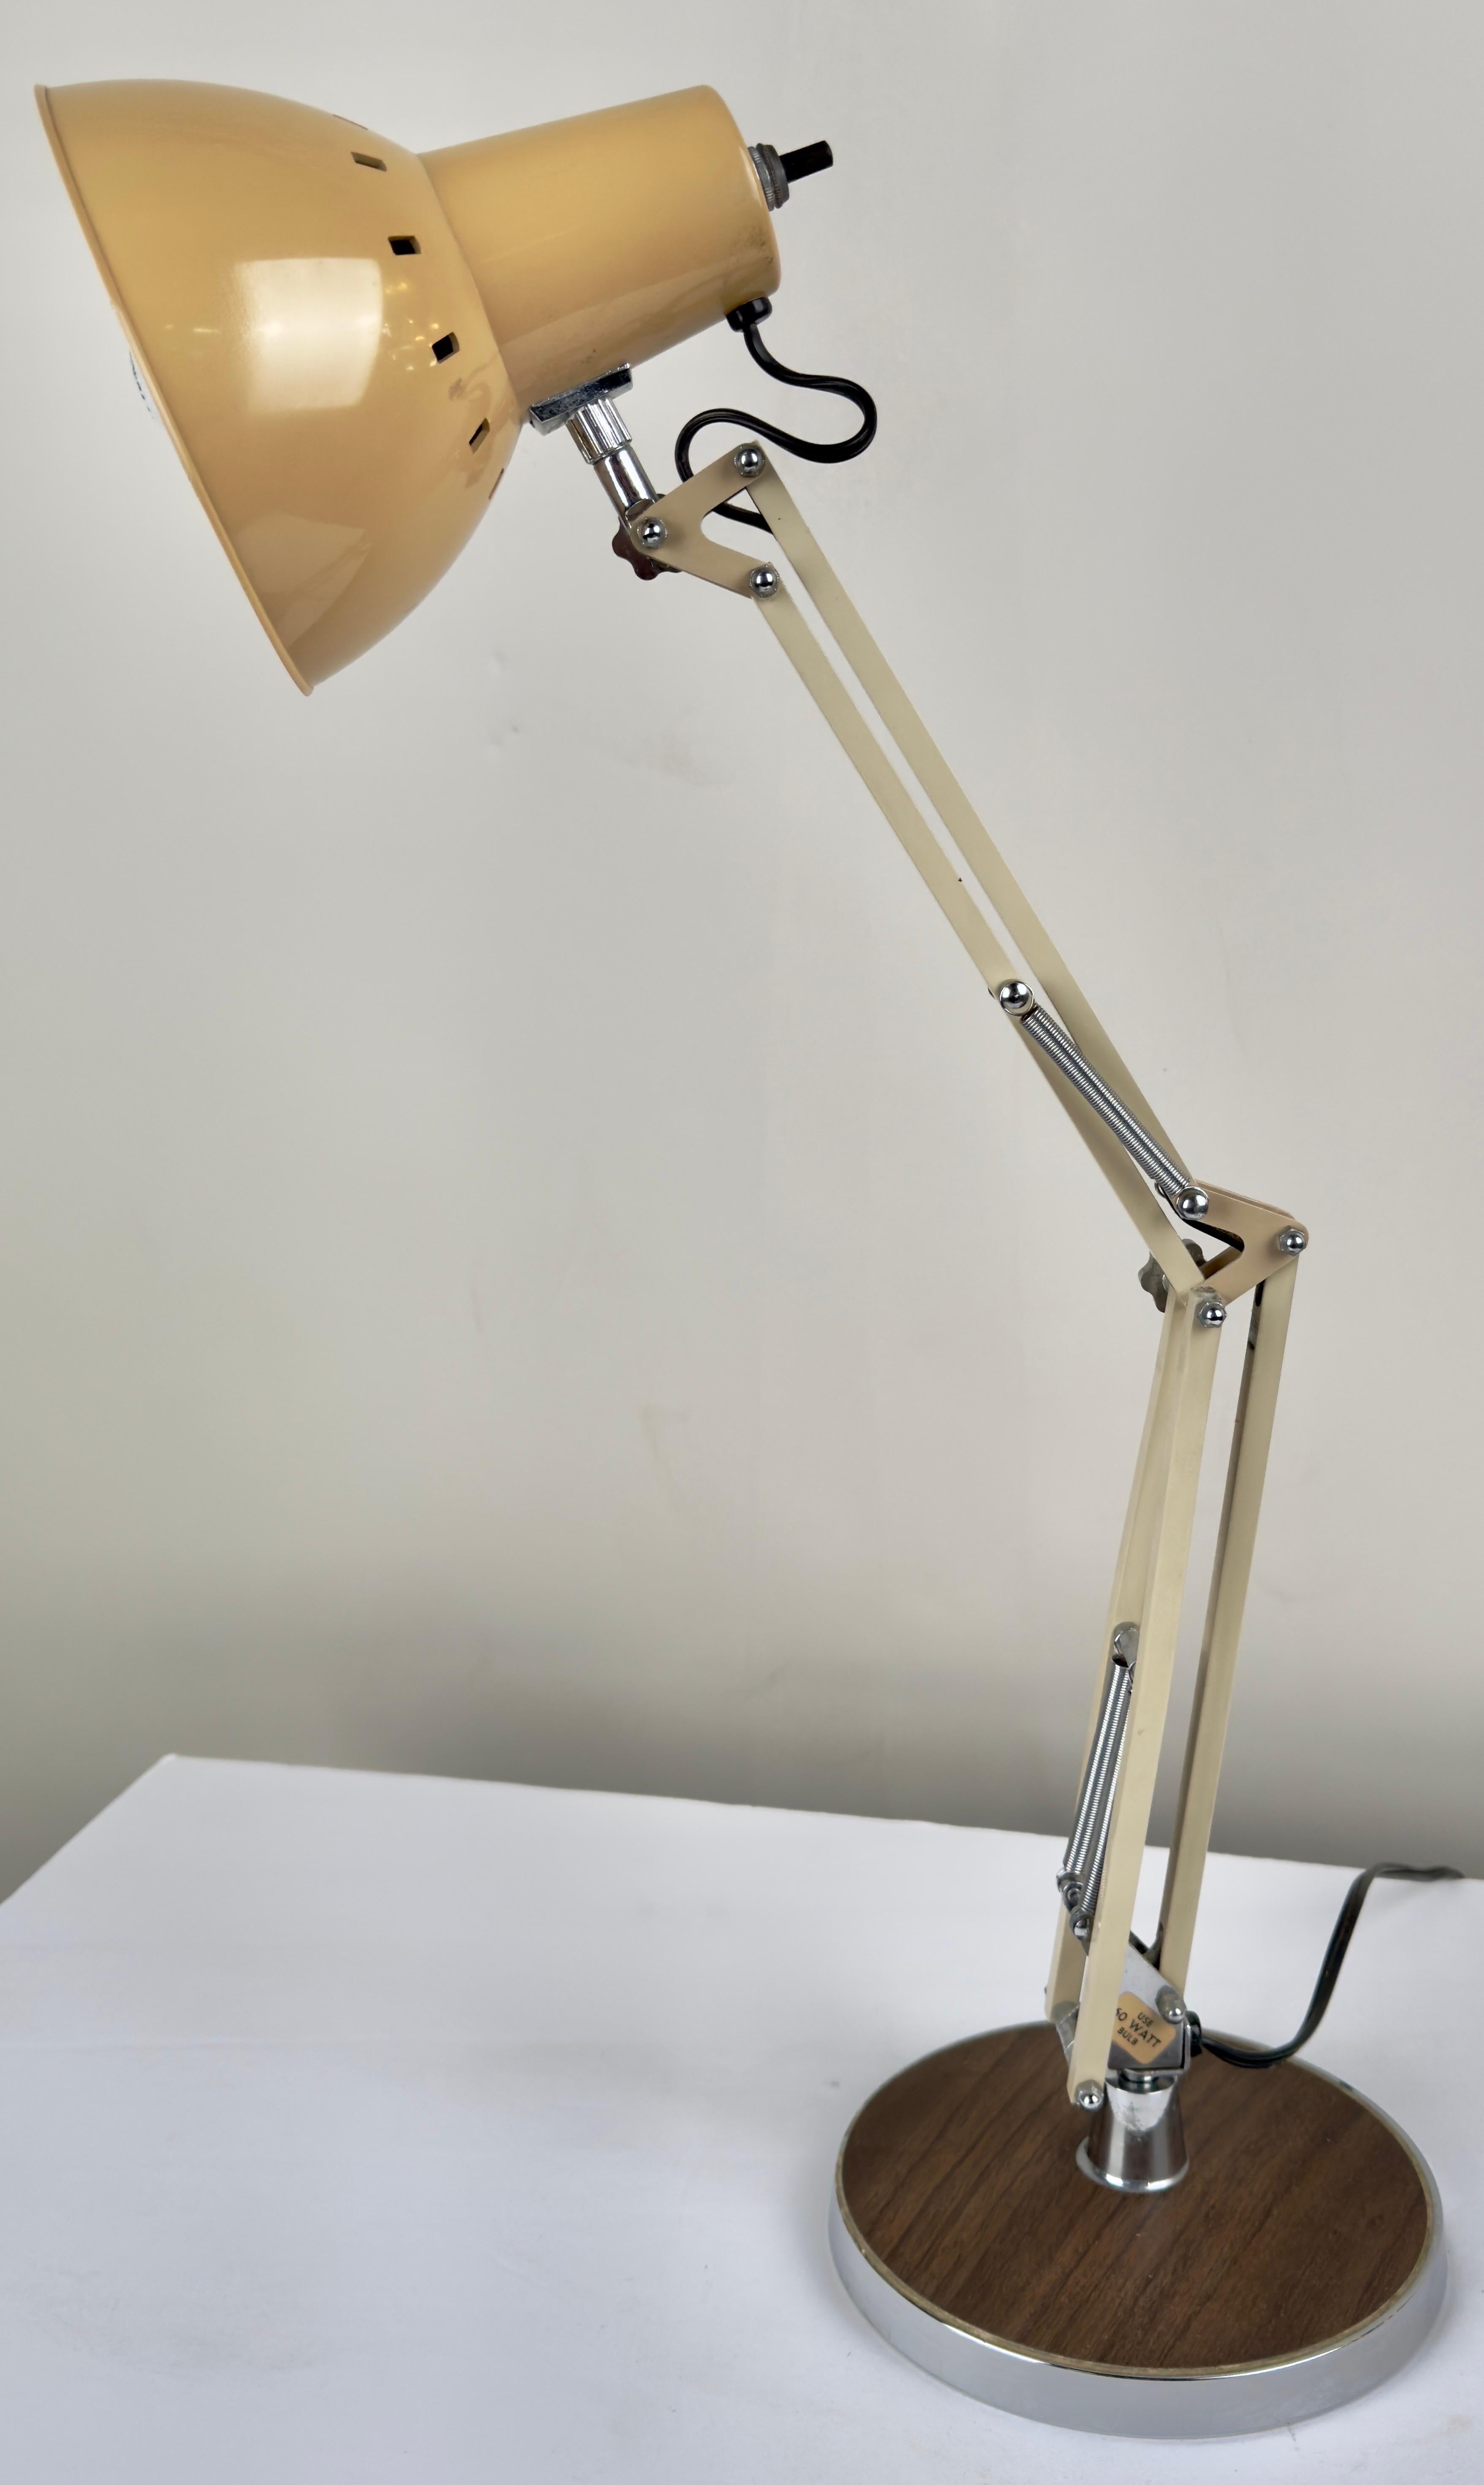 Lampe de dessin d'architecte articulée post-moderne en Tan, fabriquée par Electrix, Inc. Posée sur une base ronde ornée d'une finition bois chaleureuse, cette lampe est dotée d'une construction métallique robuste délicatement revêtue d'une teinte